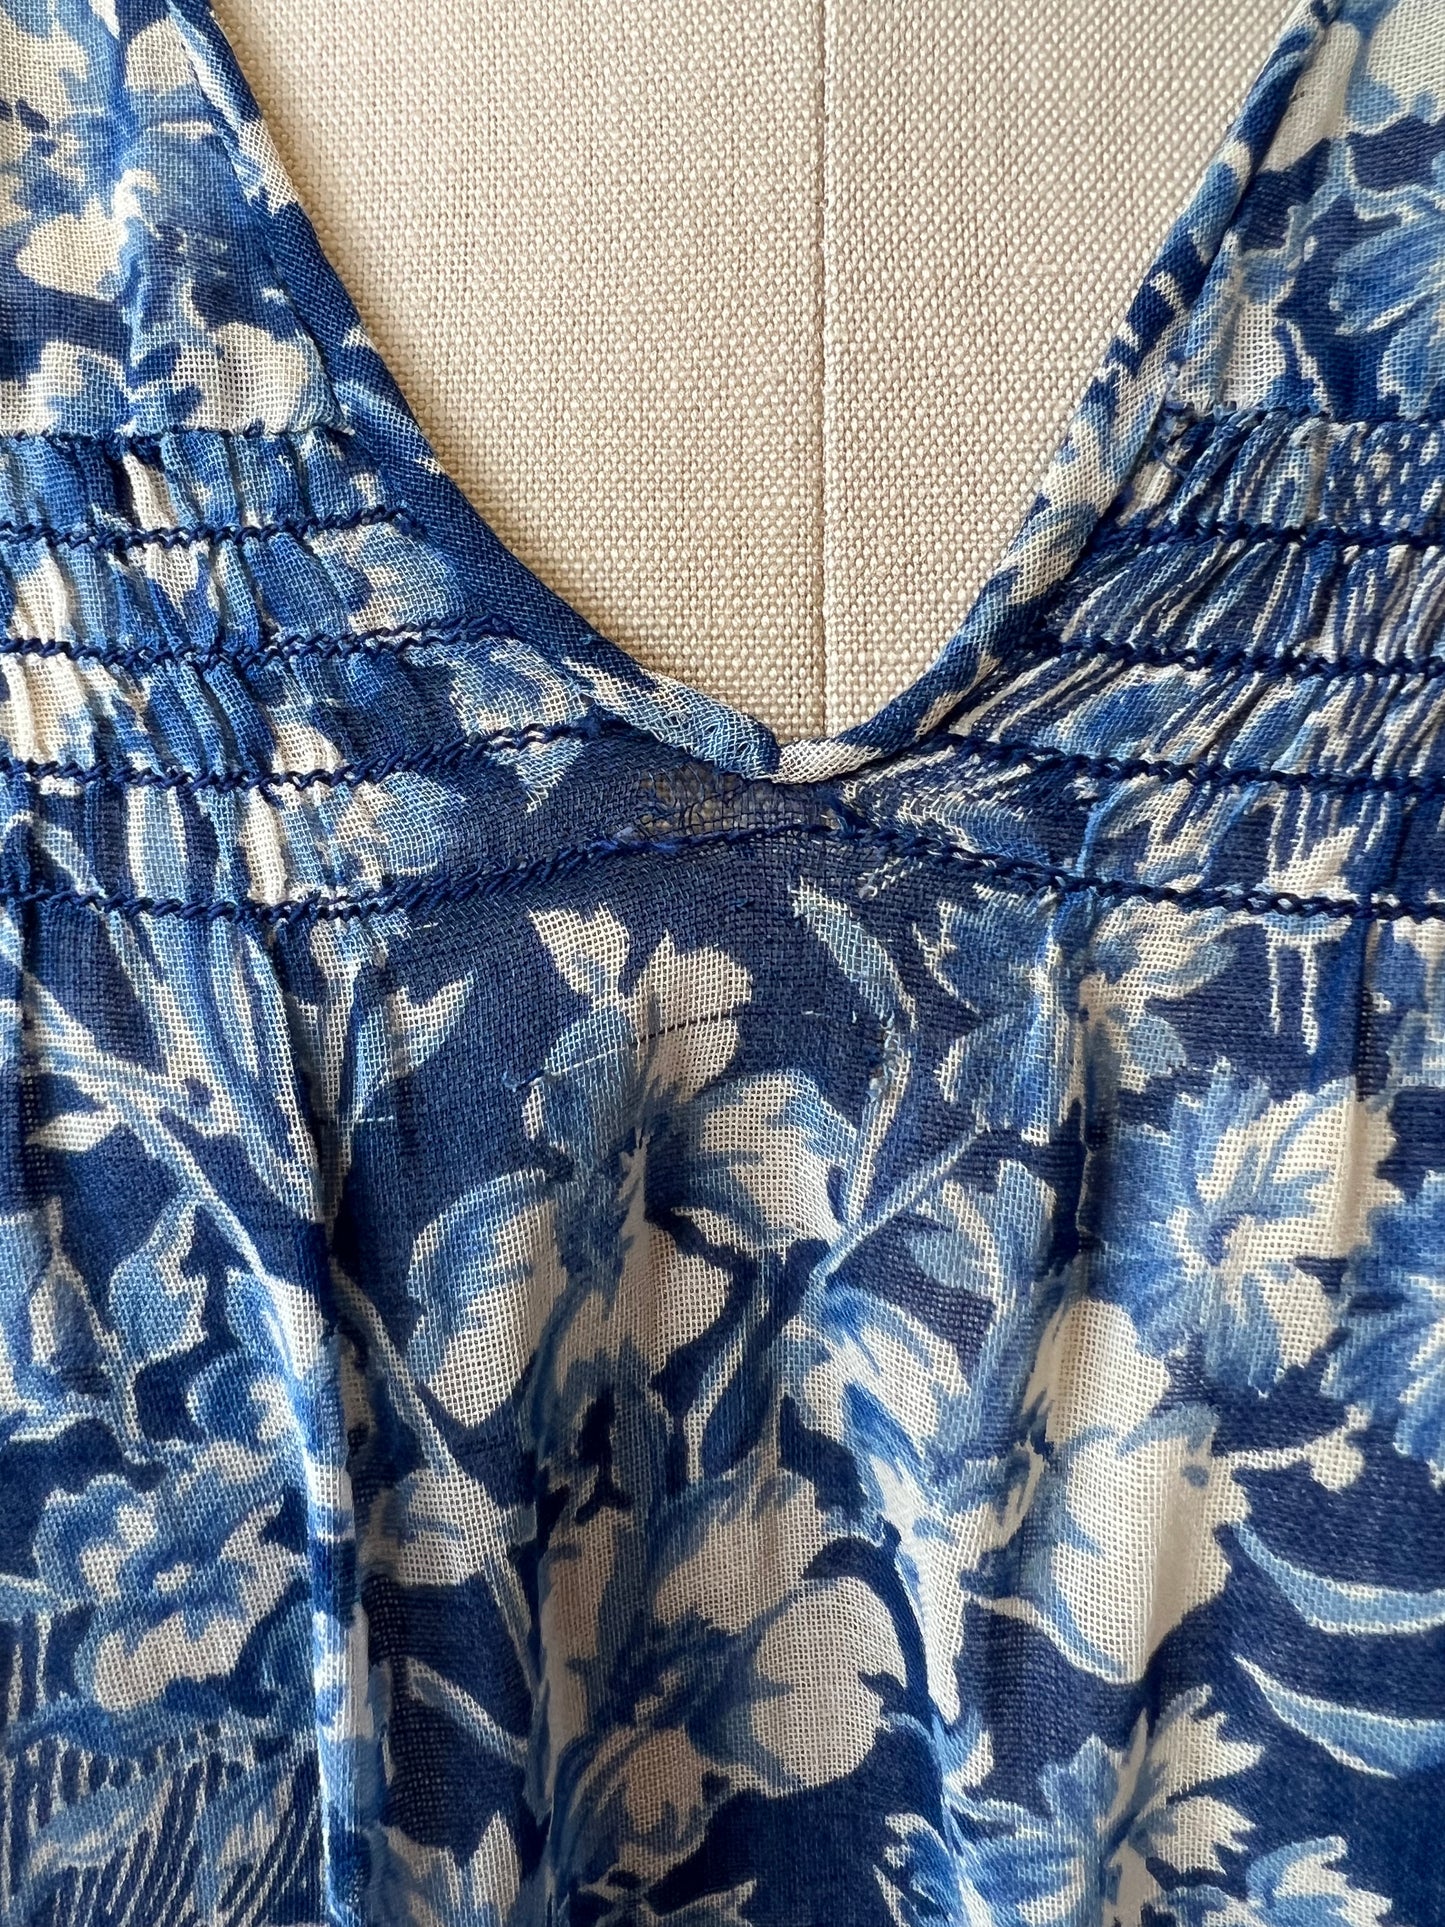 1930s Blue Floral Print Voile Dress